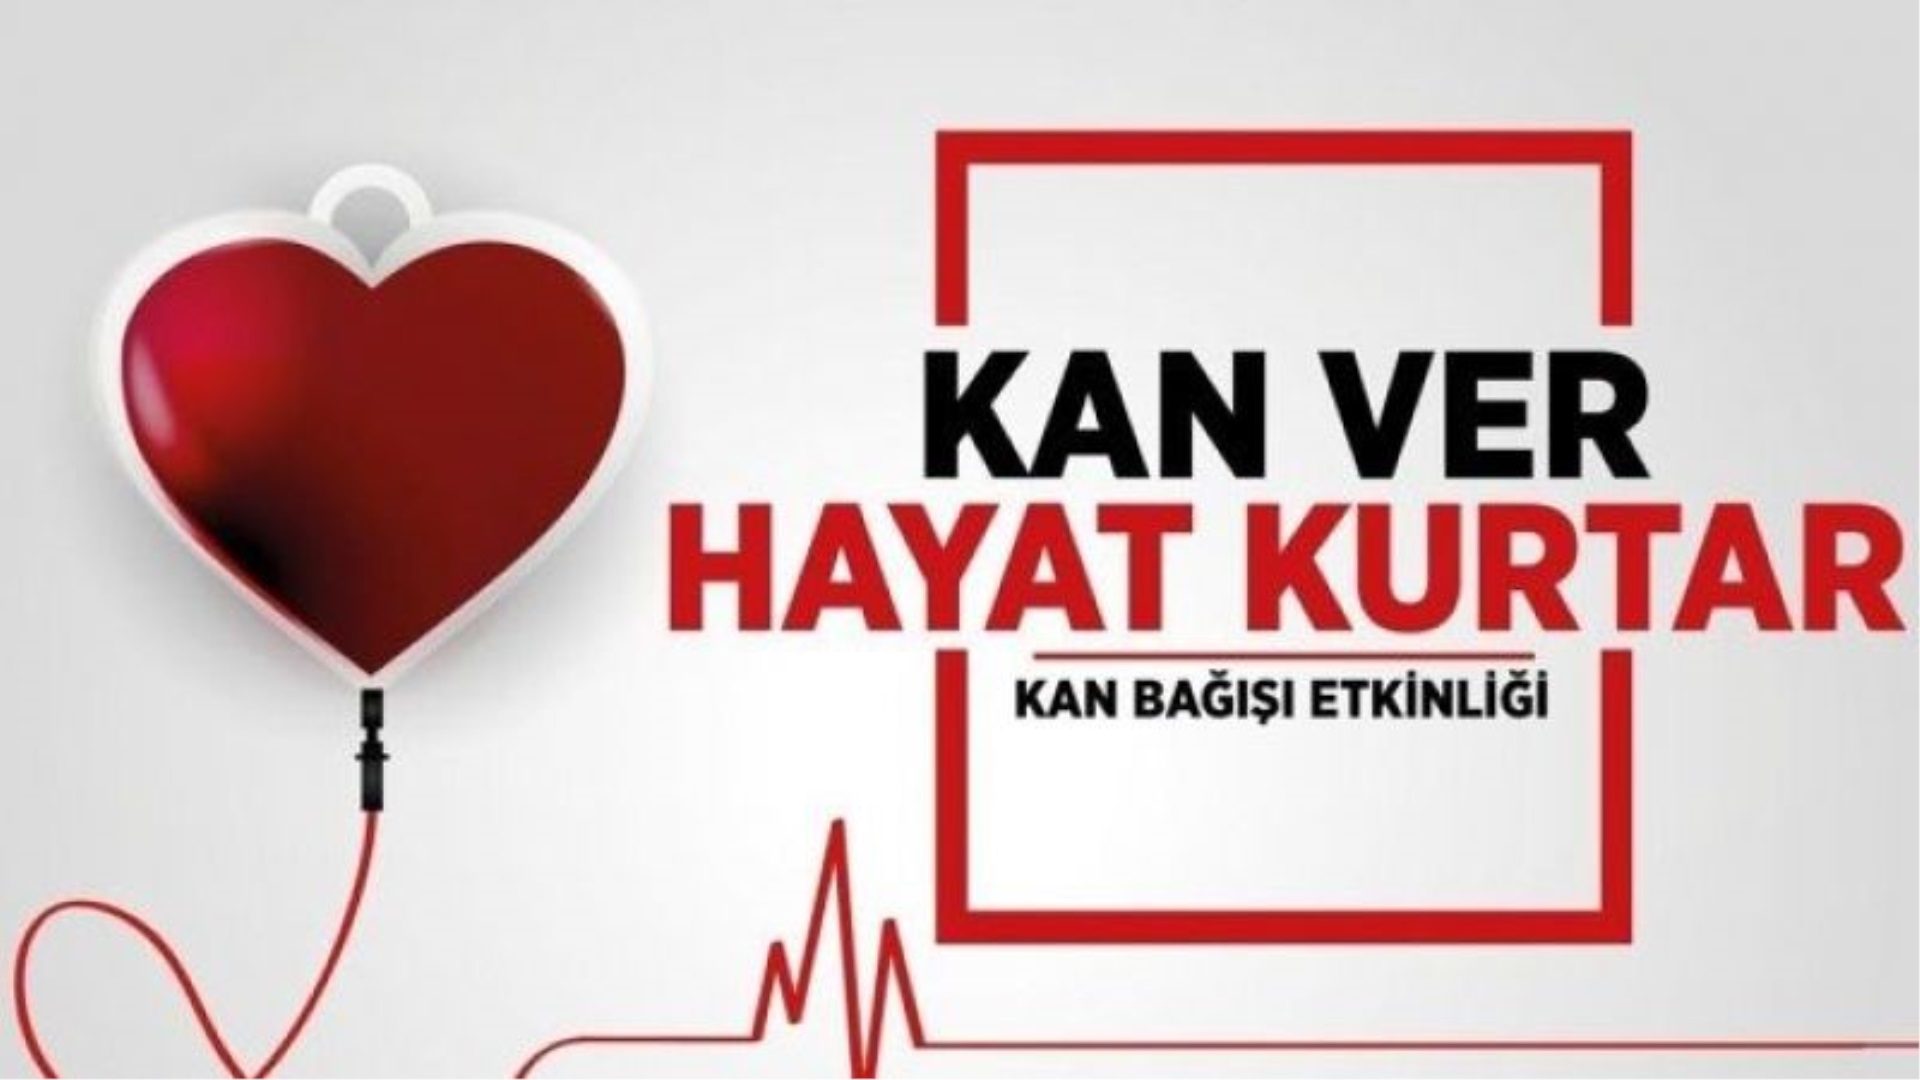 Antalya Açık Ceza İnfaz Kurumu Personeli Kızılay'a Kan Bağışında Bulundu.